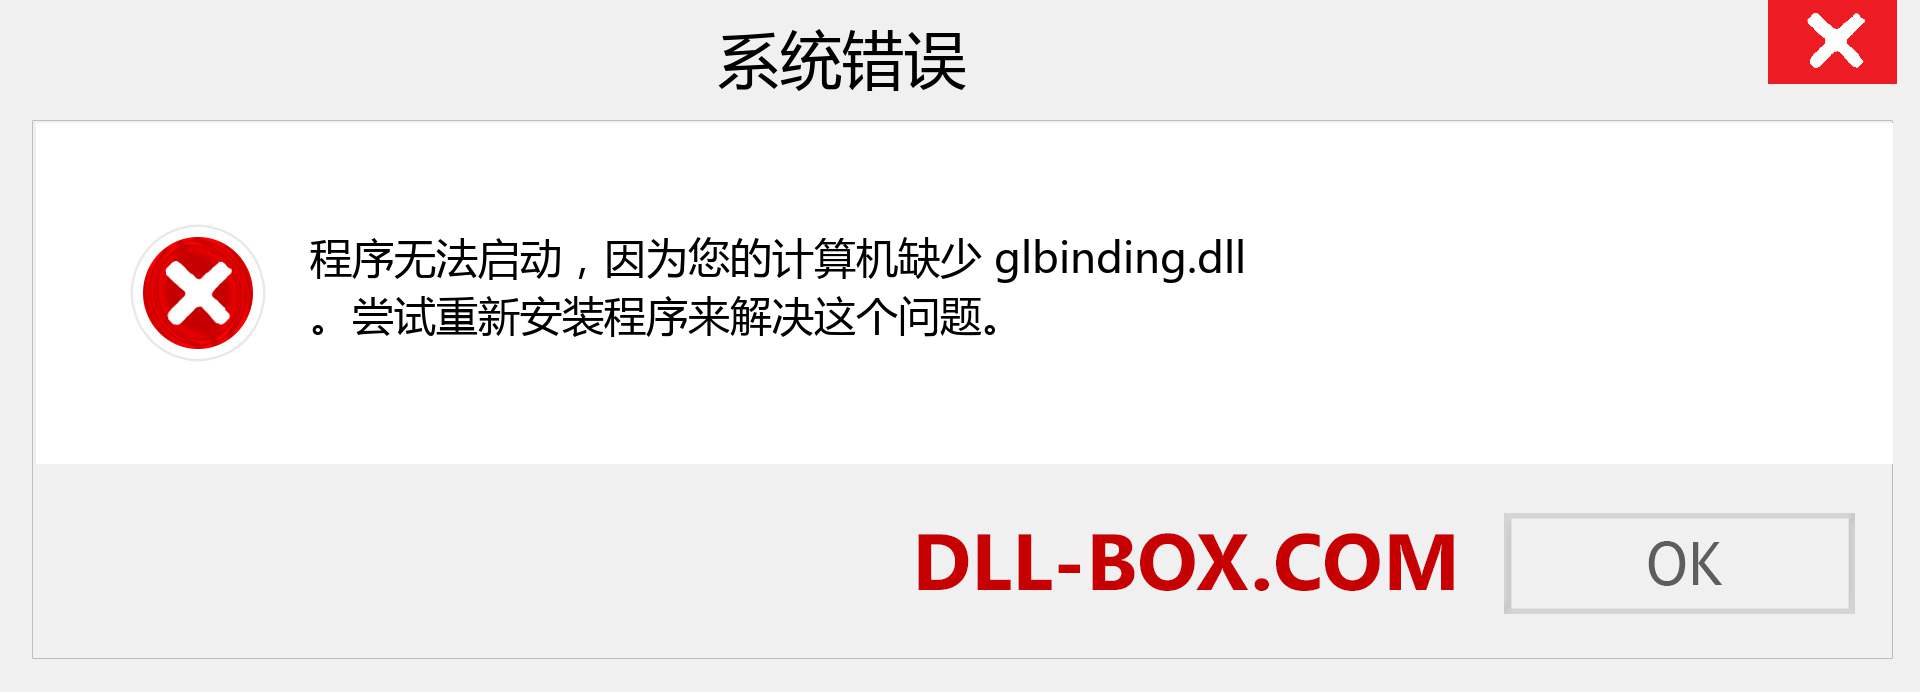 glbinding.dll 文件丢失？。 适用于 Windows 7、8、10 的下载 - 修复 Windows、照片、图像上的 glbinding dll 丢失错误